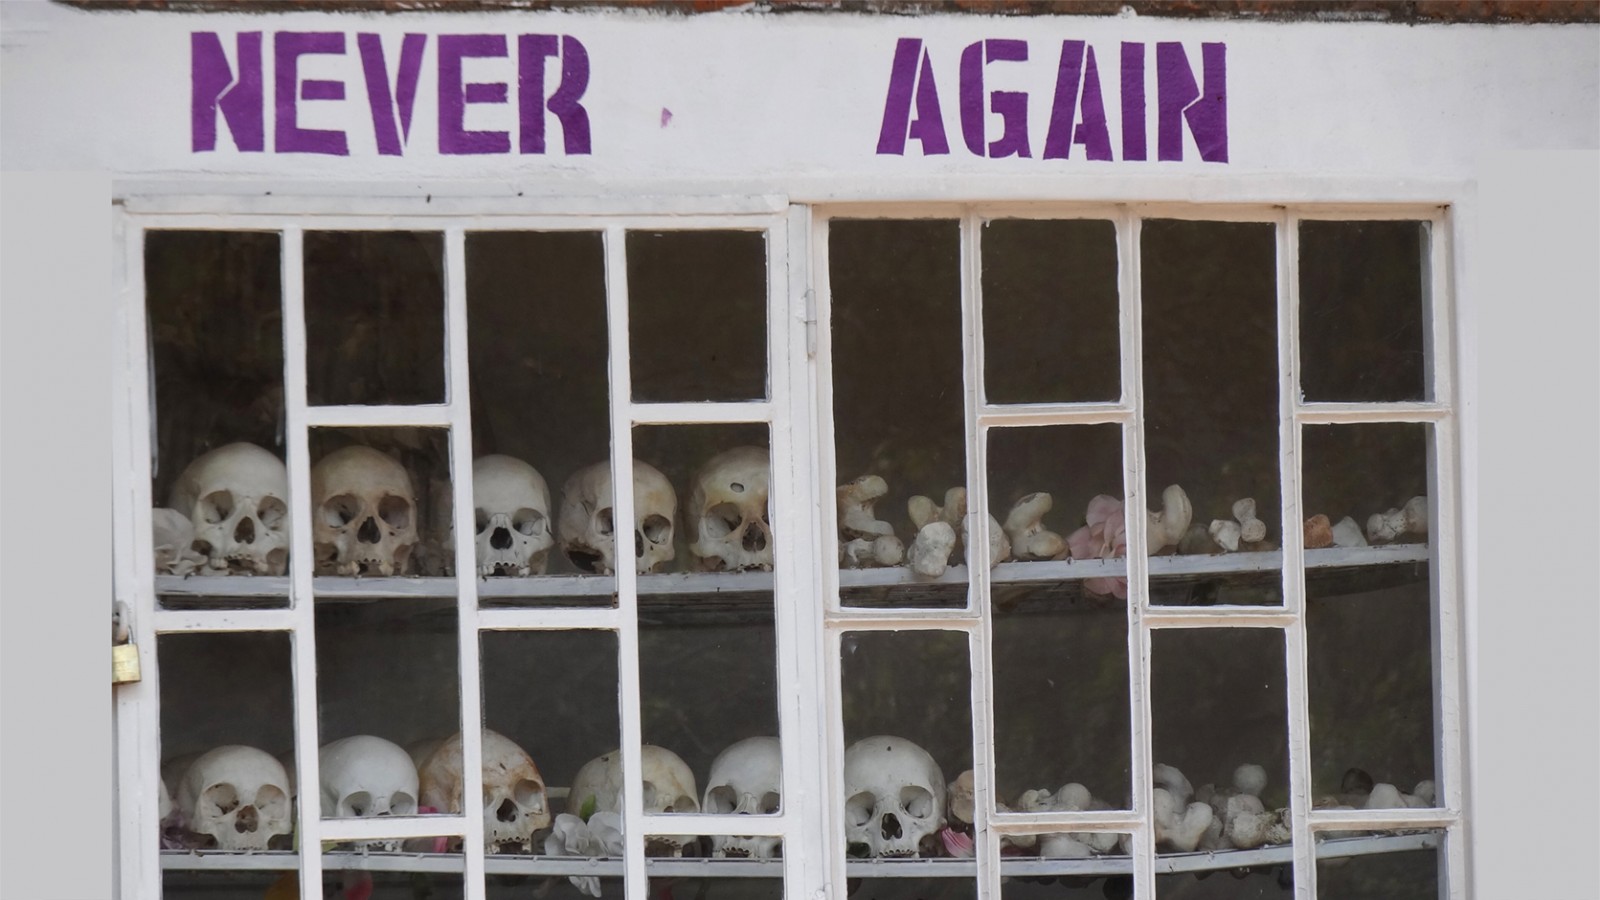 אנדרטה לרצח העם ברואנדה (צילום: Adam Jones, Ph.D ויקימדיה)